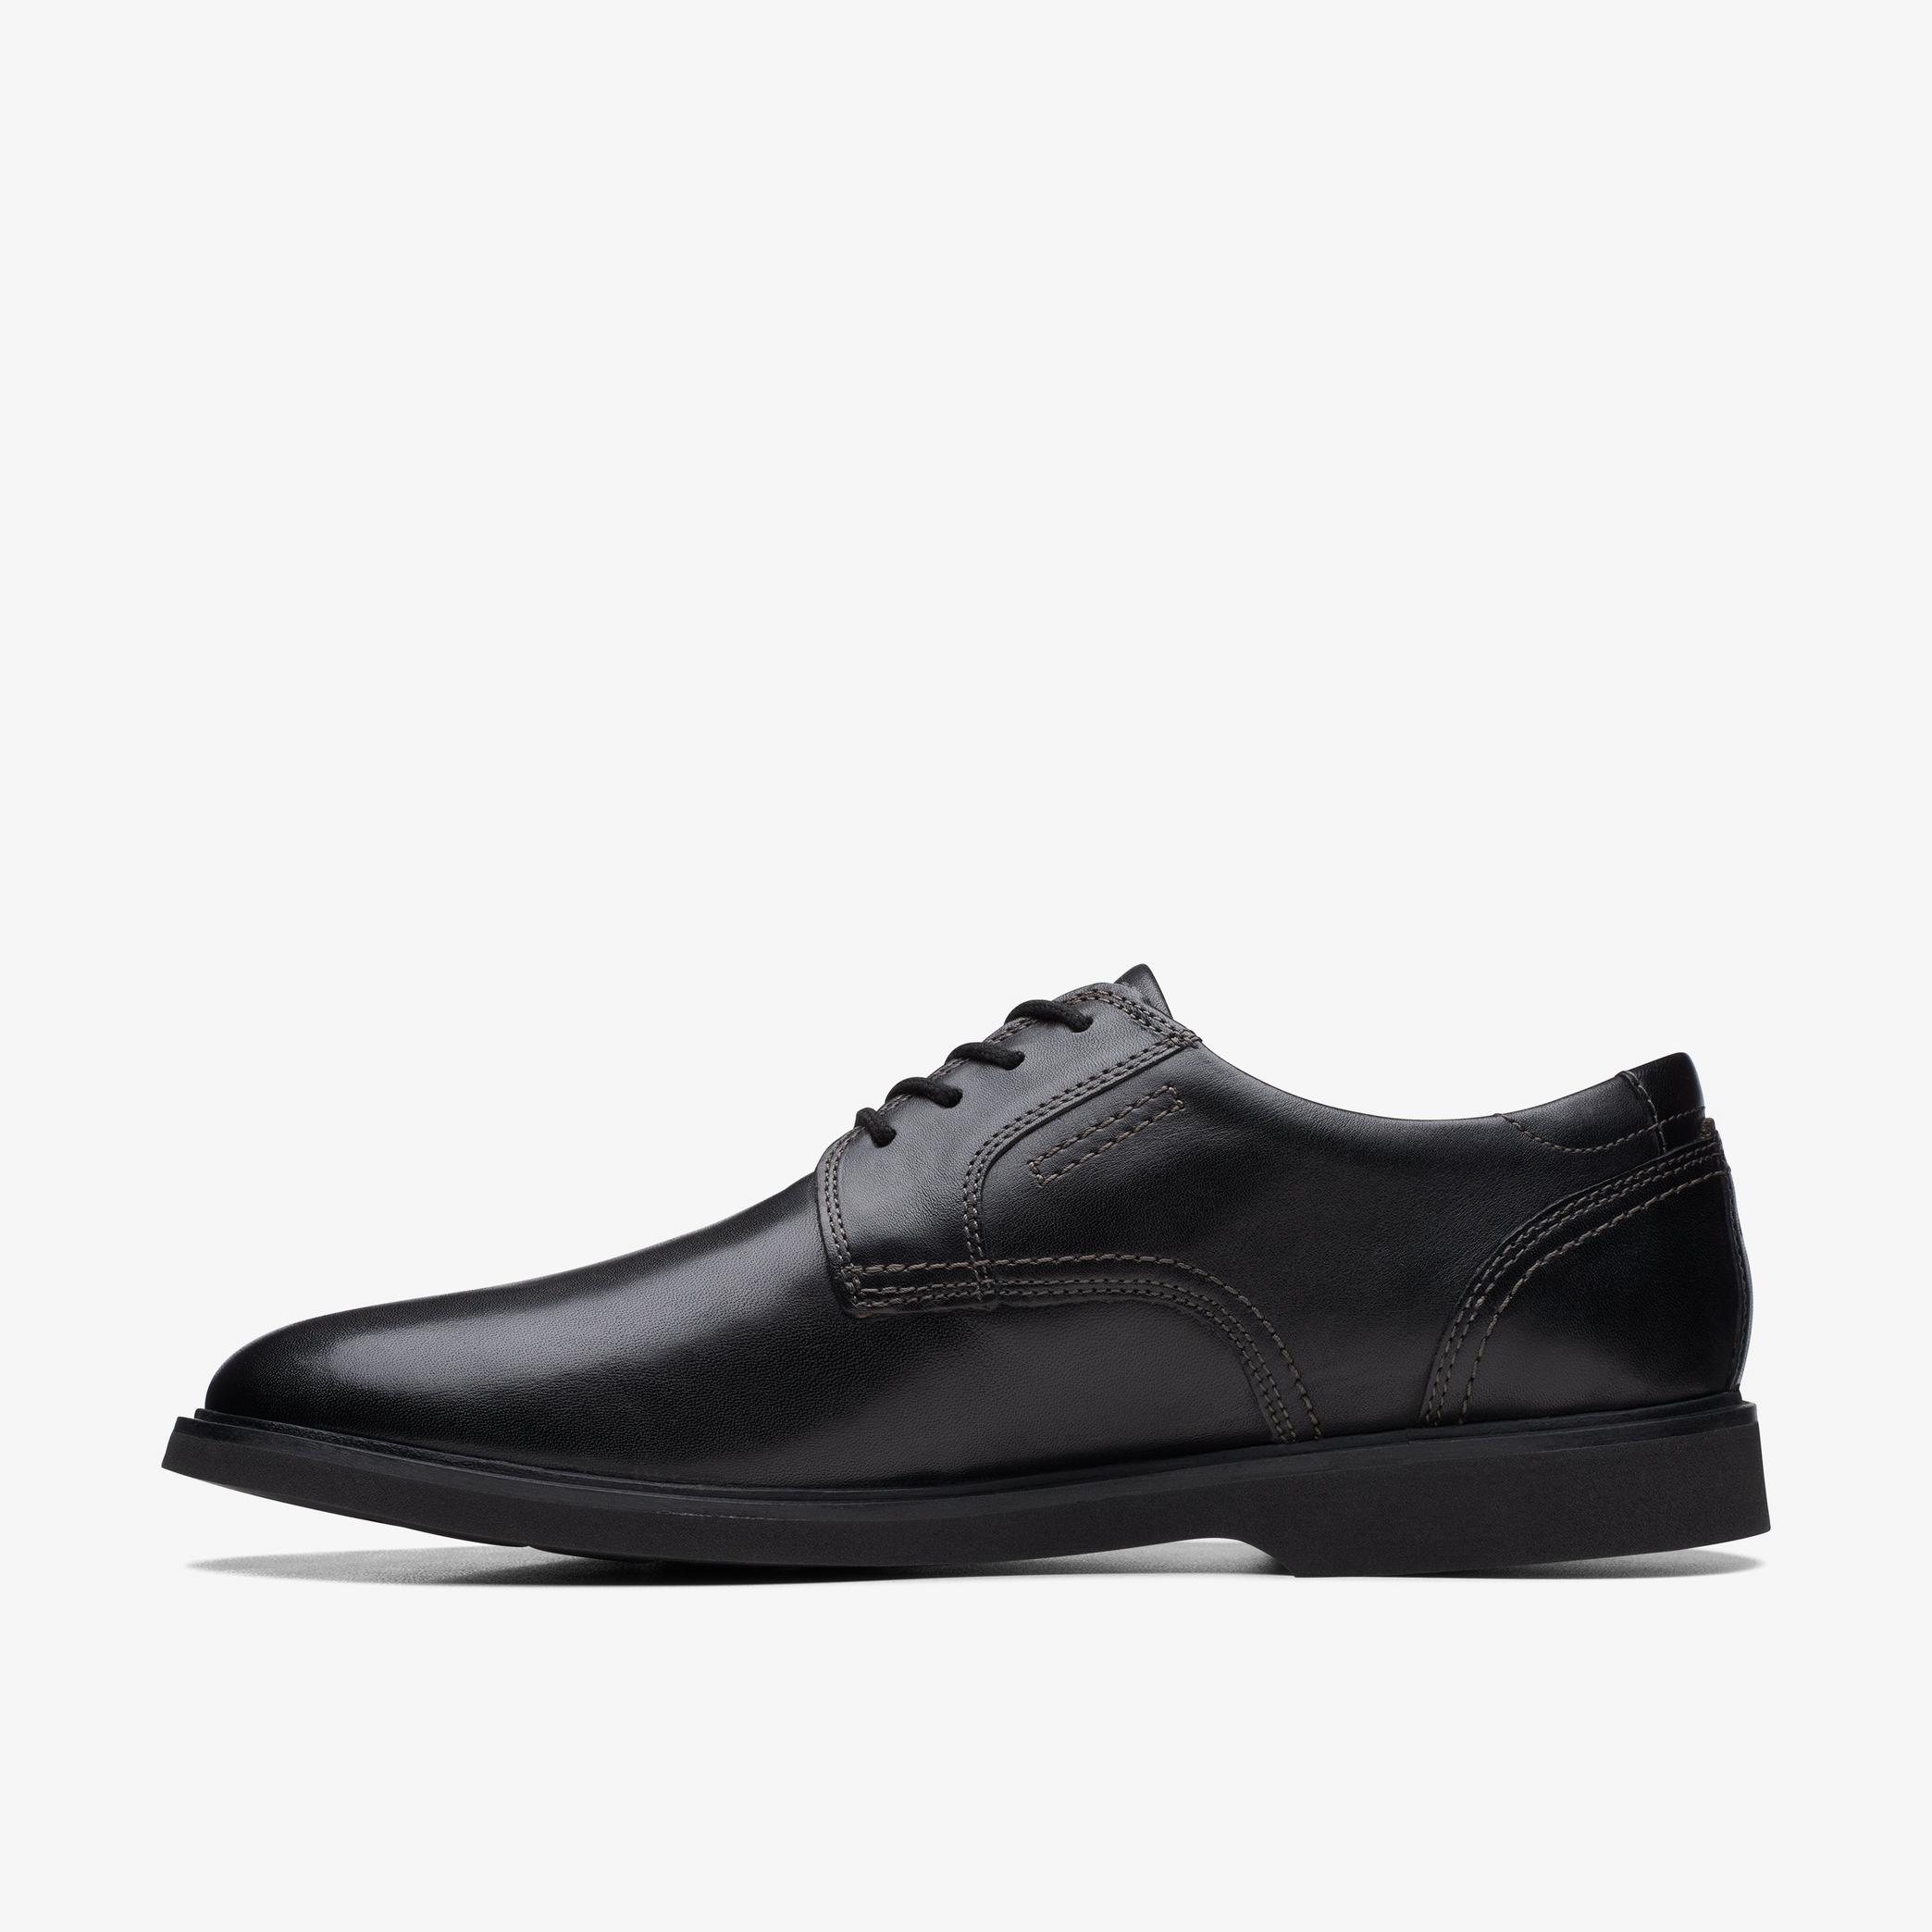 Chaussures Oxford en cuir noir Malwood Lace, vue 2 de 6